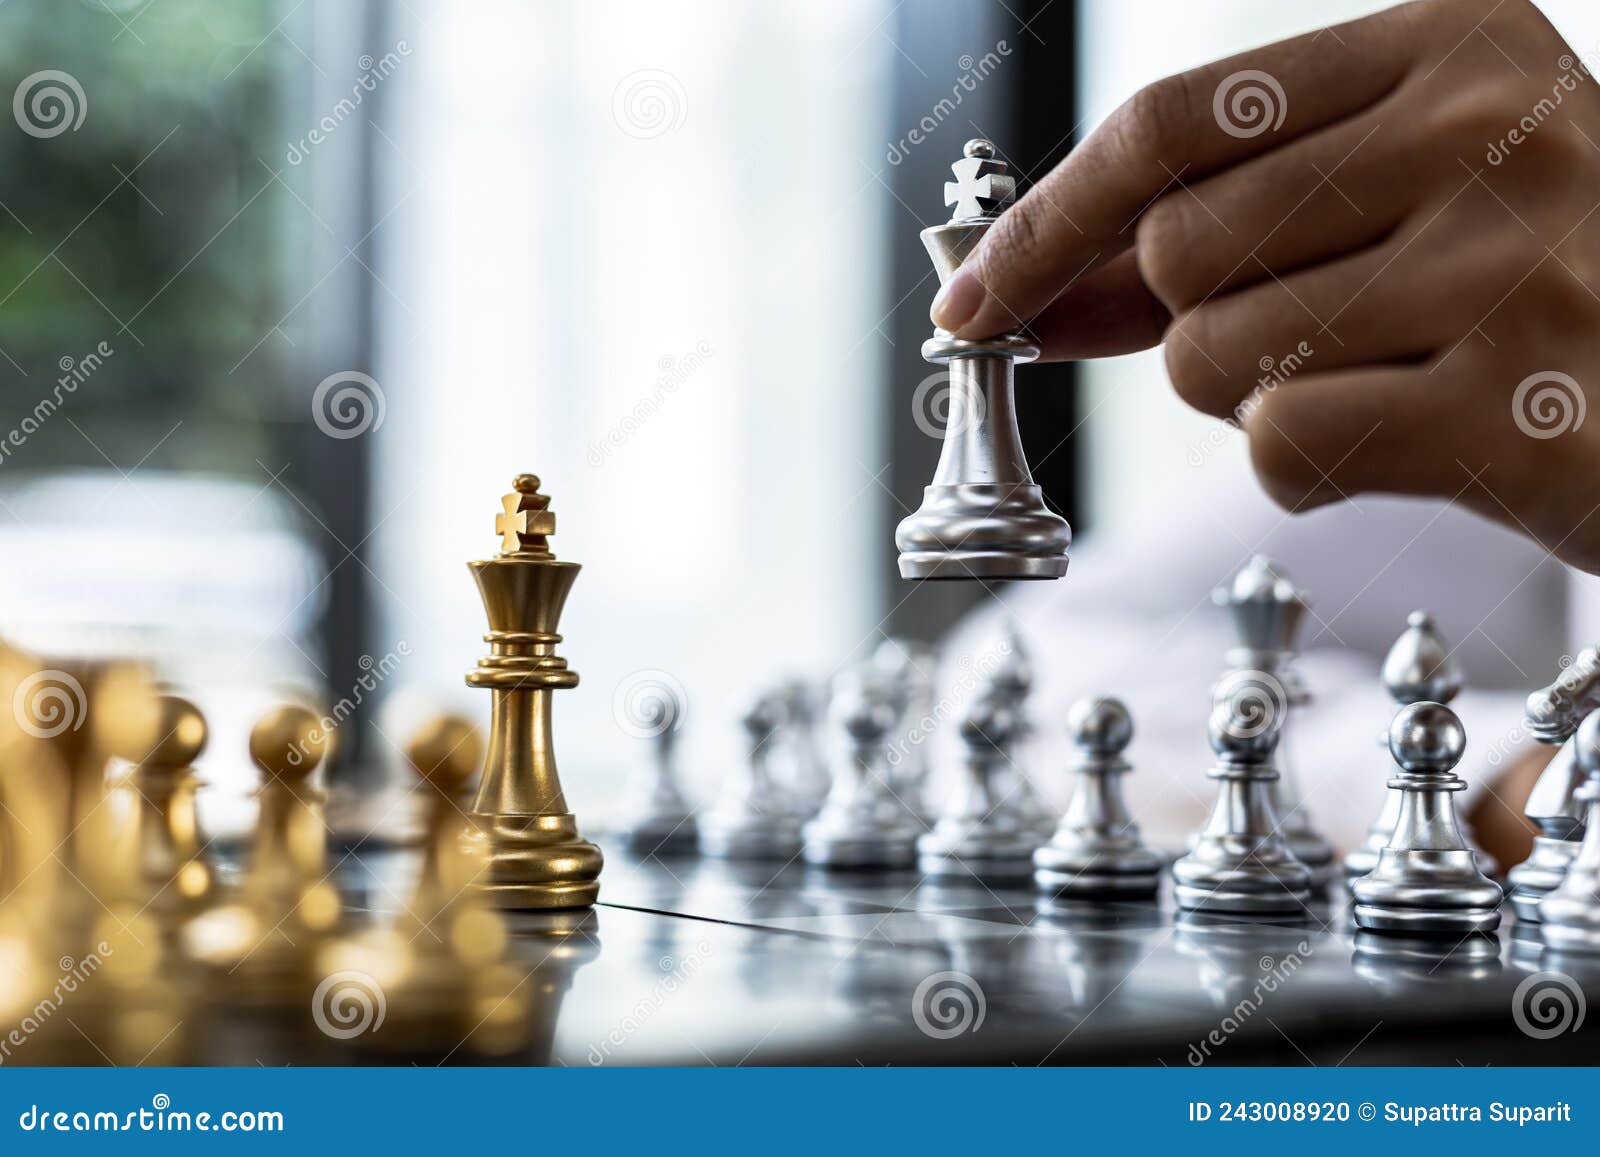 Pessoa jogando xadrez